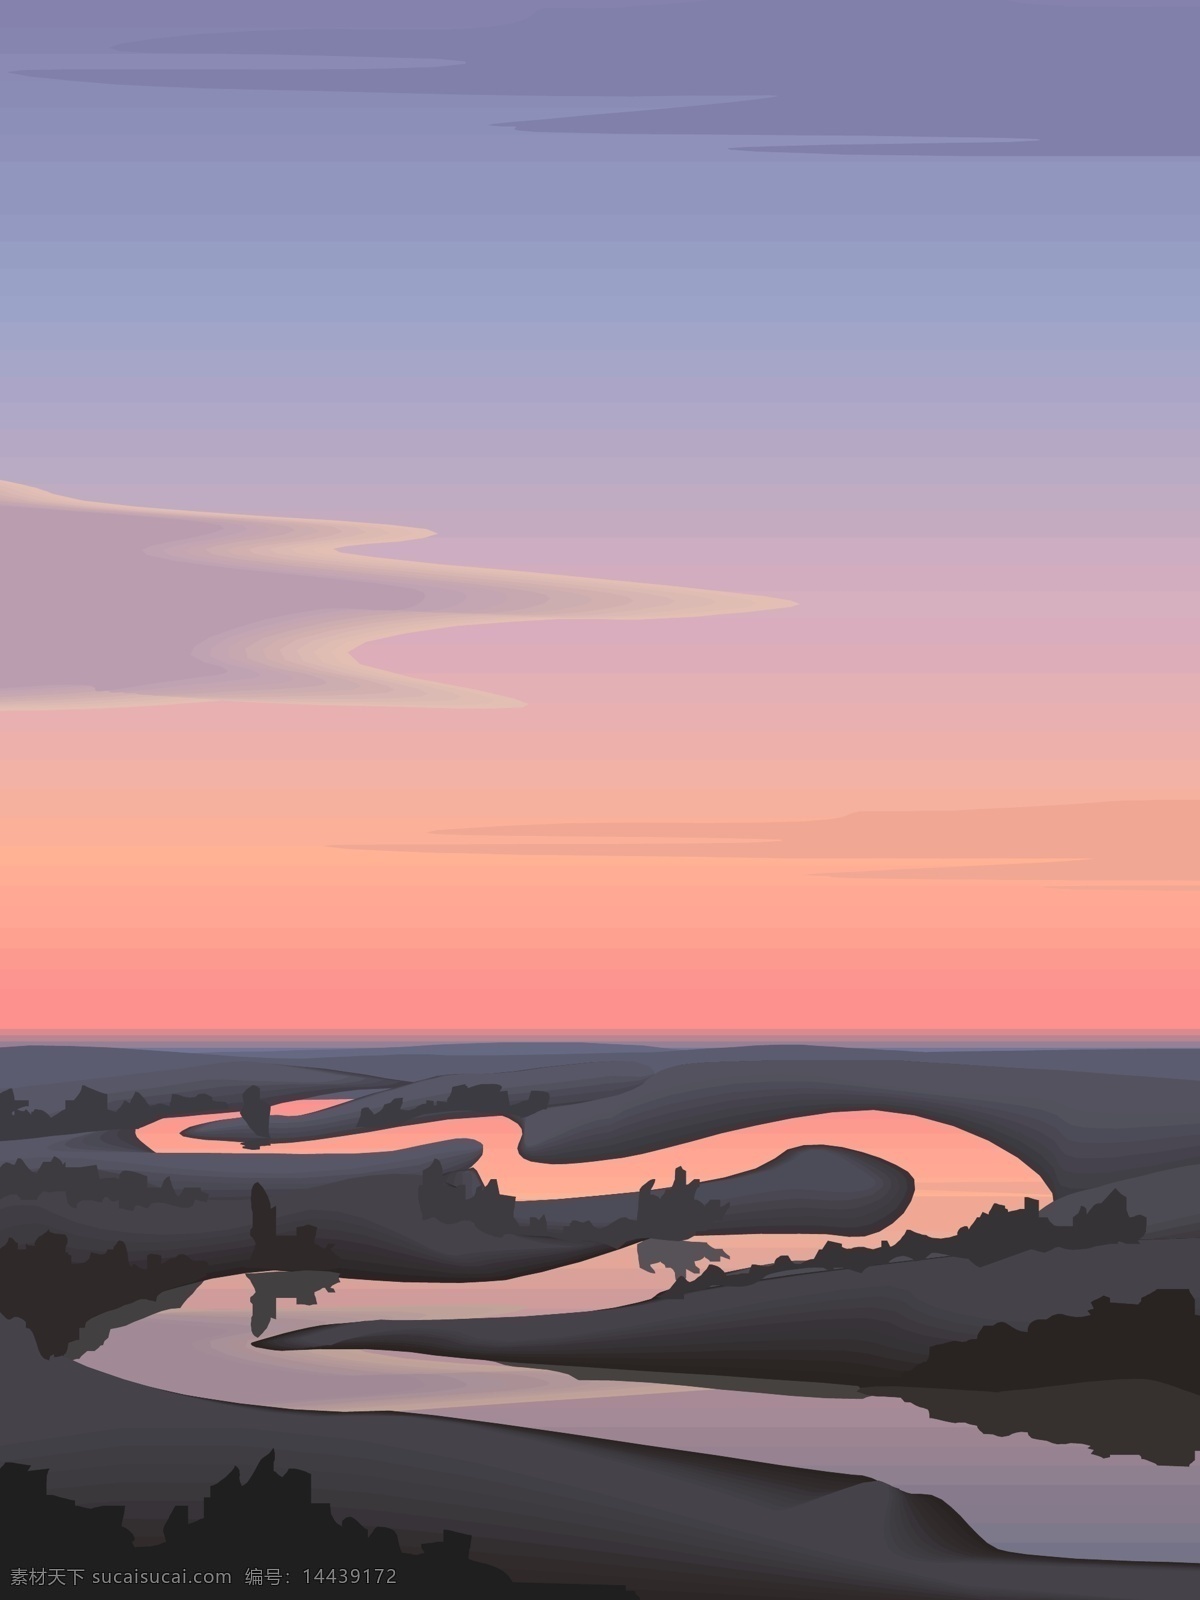 早晨 河流 其他矢量 日出 矢量素材 矢量图库 早晨的河流 自然风景插画 插画集